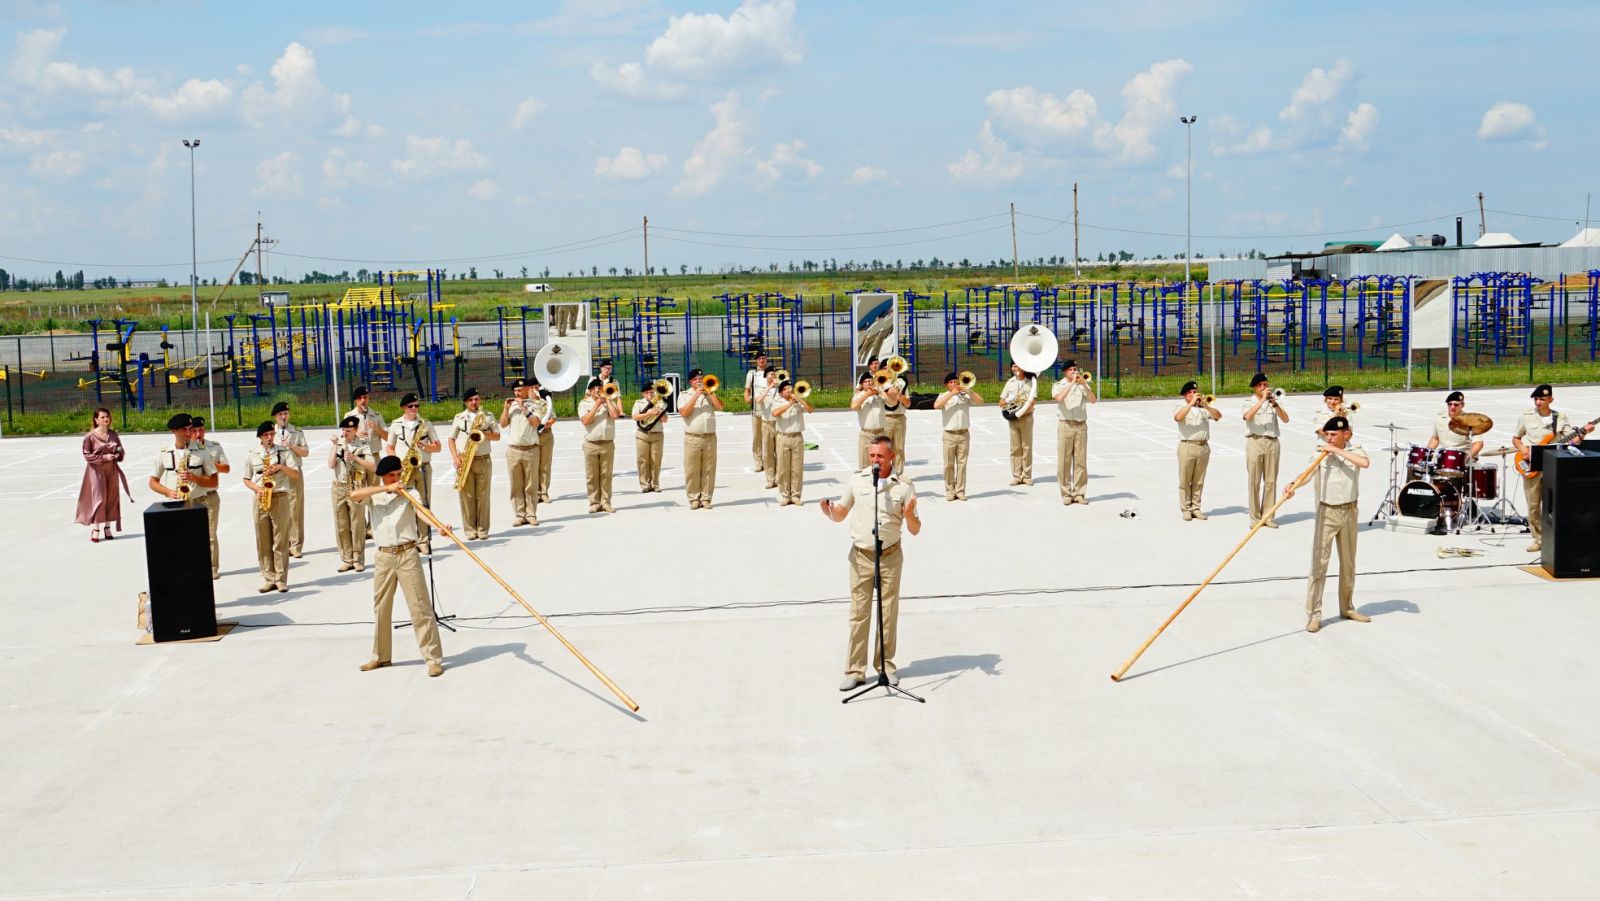 Фото строительства «Широкого лана» показали в Минобороны — военных вдохновляет оркестр, фото — Минобороны